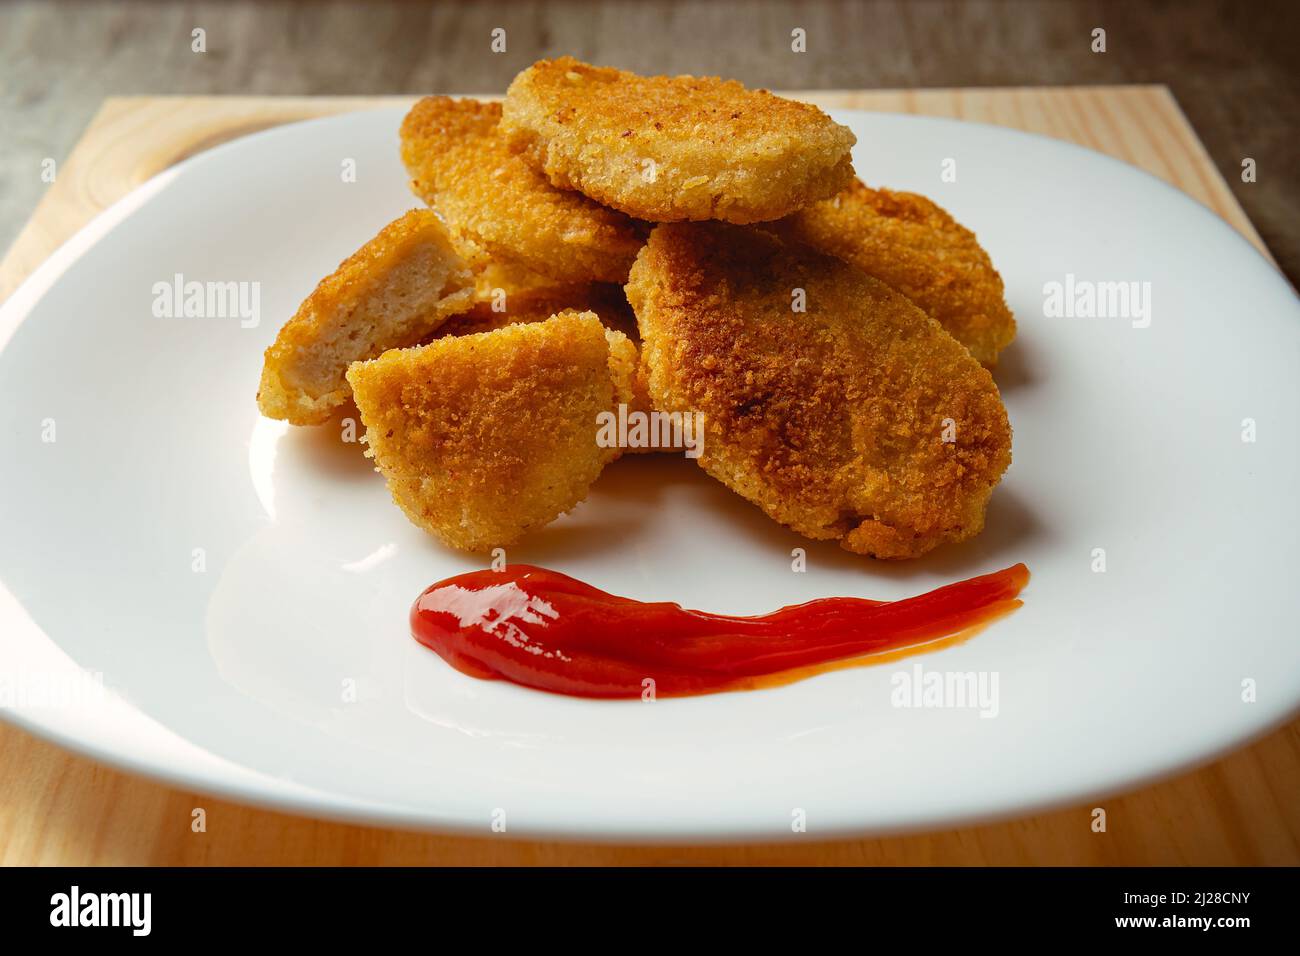 Nuggets de pollo con pan frito crujiente, fondo de madera. Sabrosos pepitas de pollo con salsa de tomate lista para comer. Foto de stock